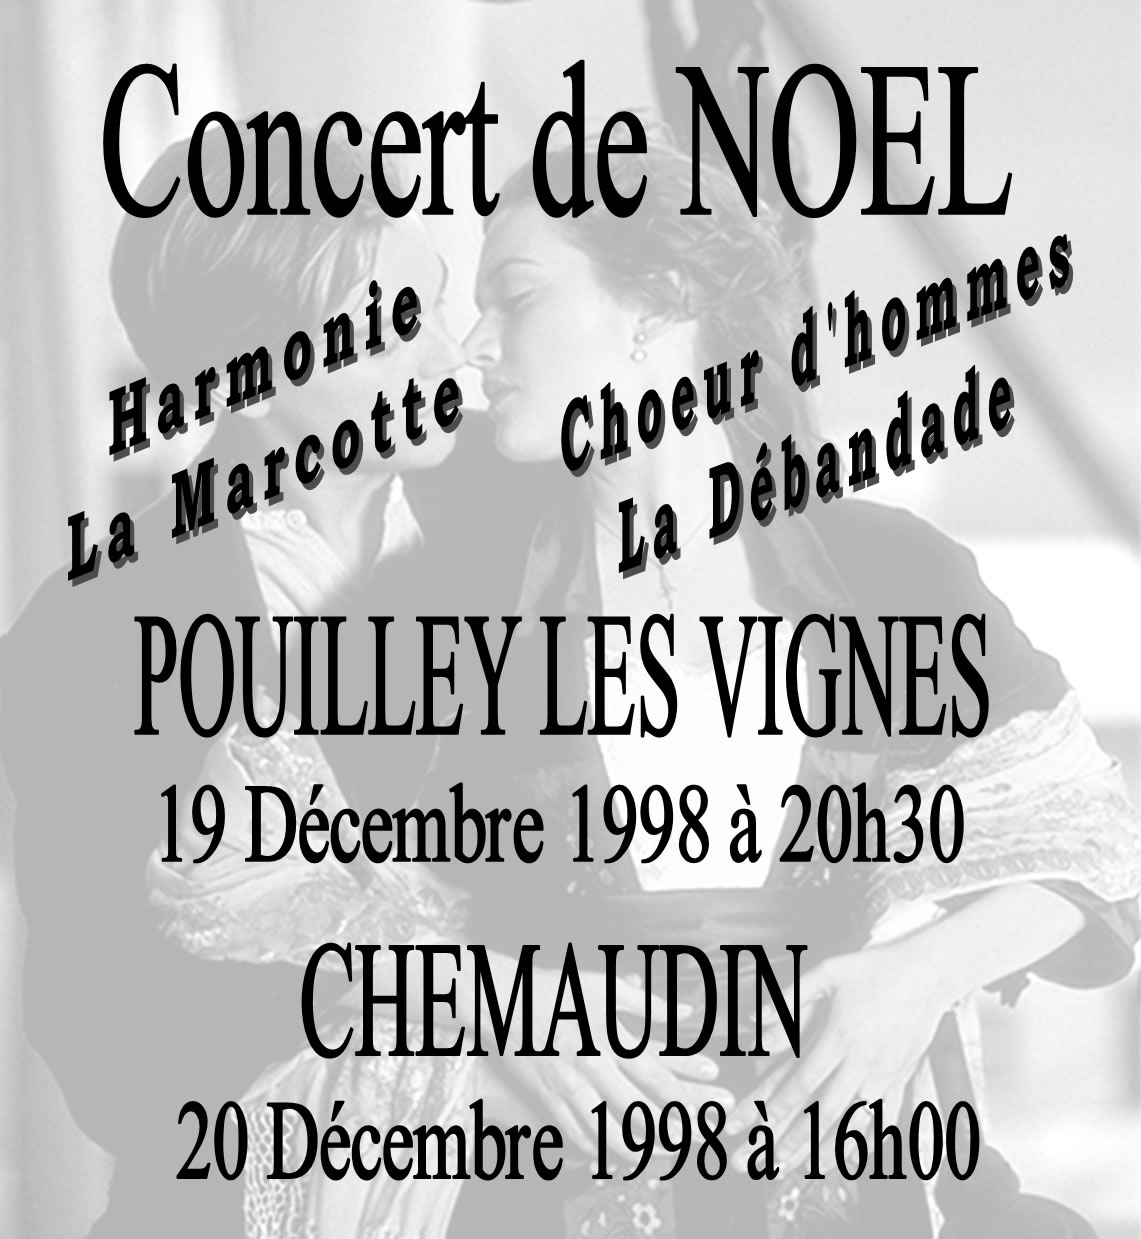 1998 Concert de Noel